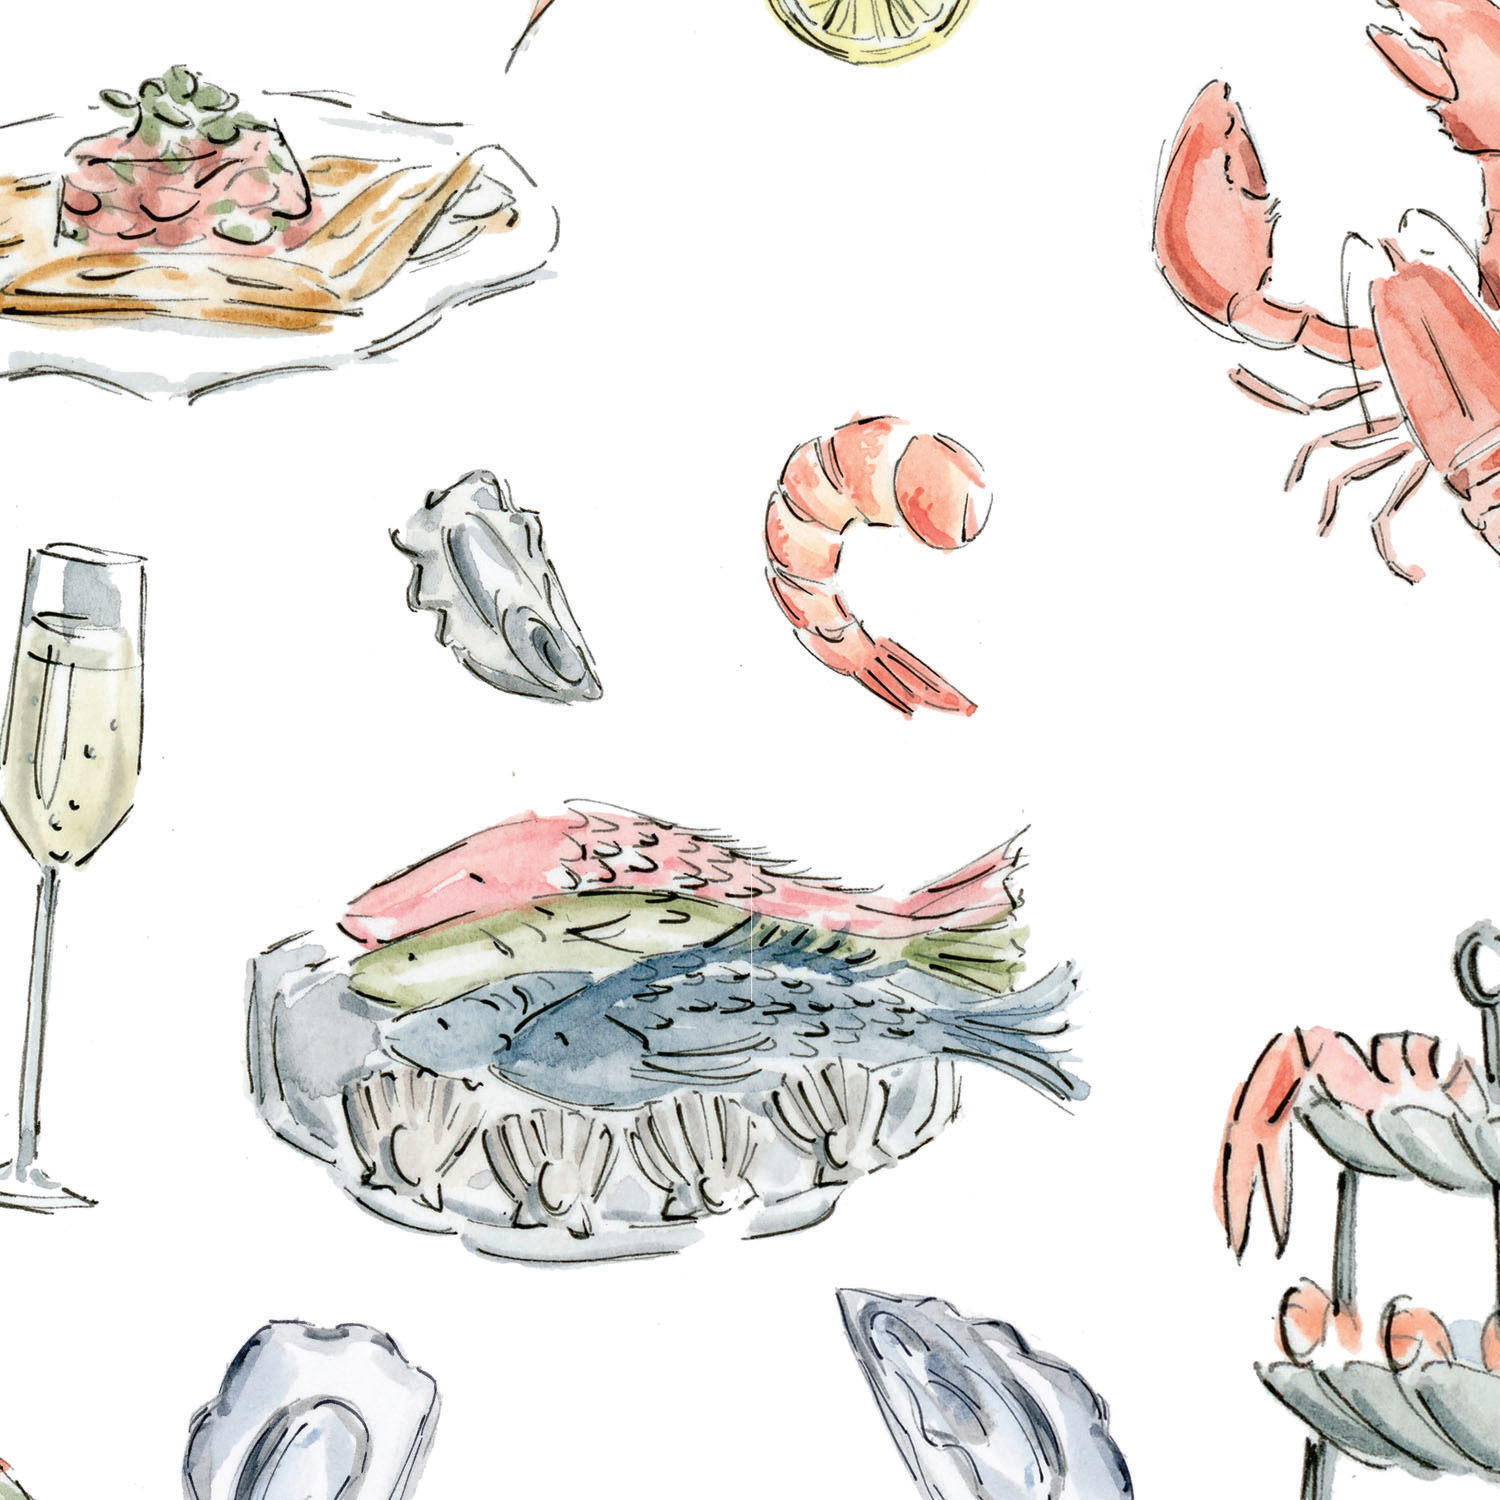 Fruits de mer et champagne / Seafood and champagne - Napperons de papier / Paper placemats